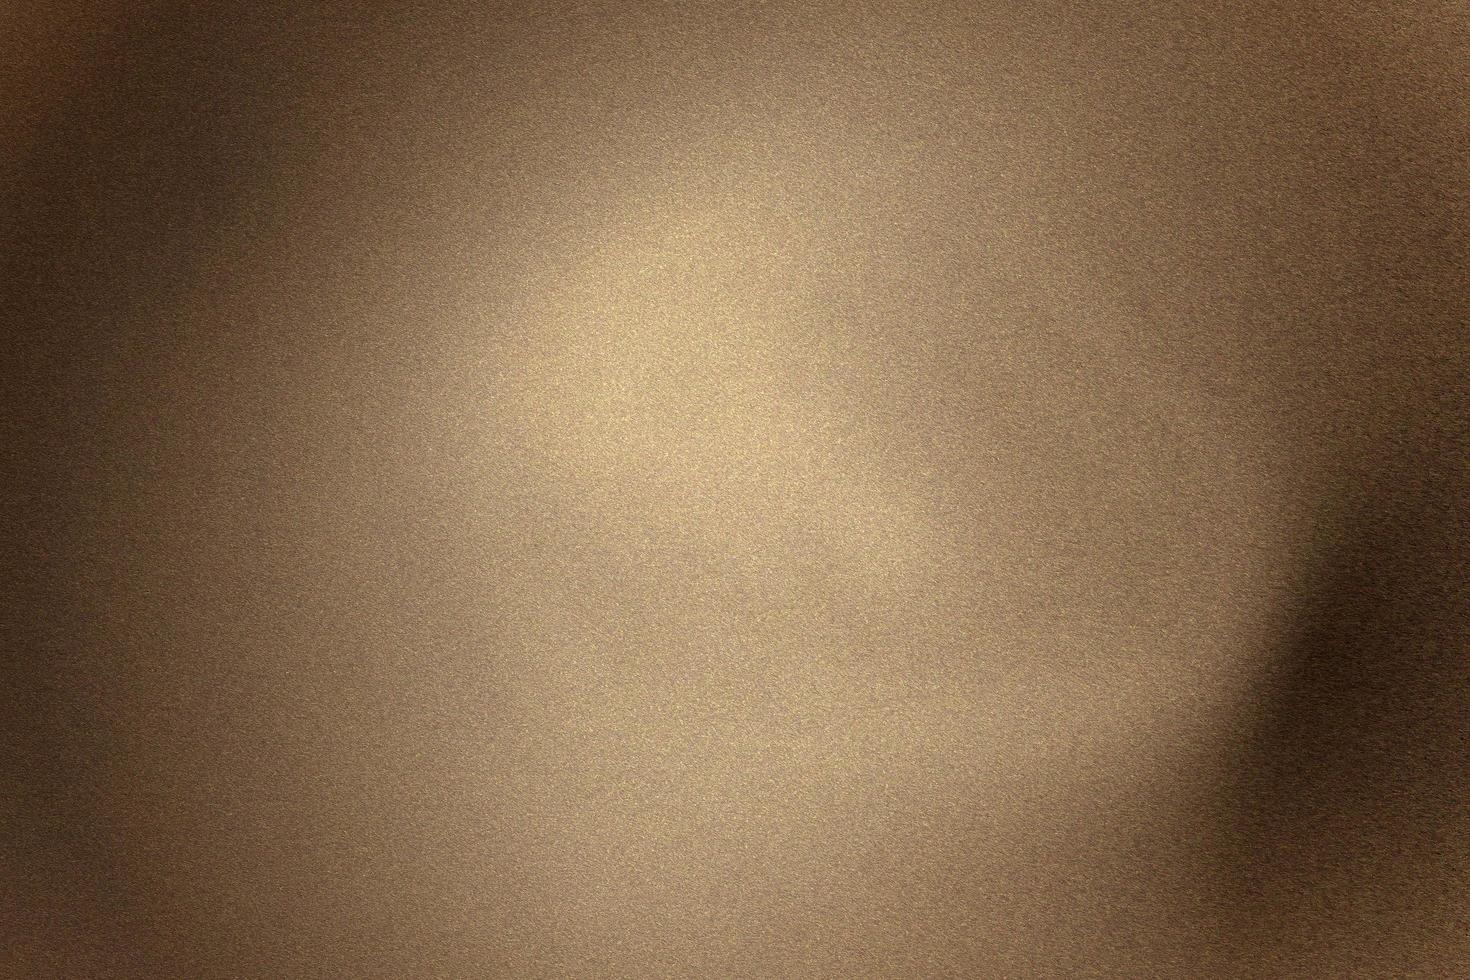 luce che brilla sul pannello metallico a onda marrone in una stanza buia, sfondo a trama astratta foto